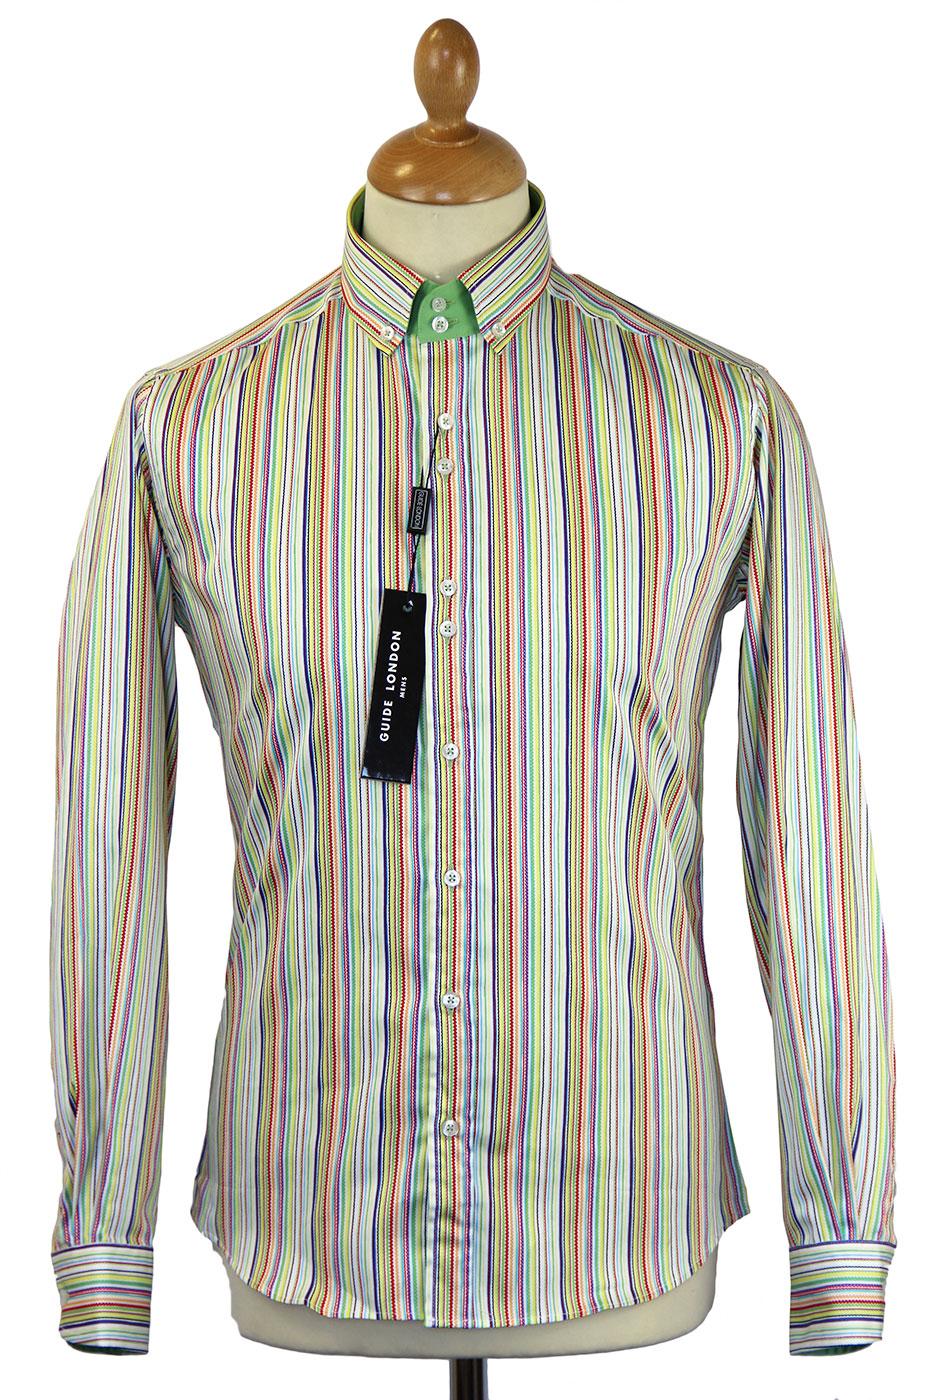 GUIDE LONDON Bright Multi Stripe Retro 60s Mod Shirt